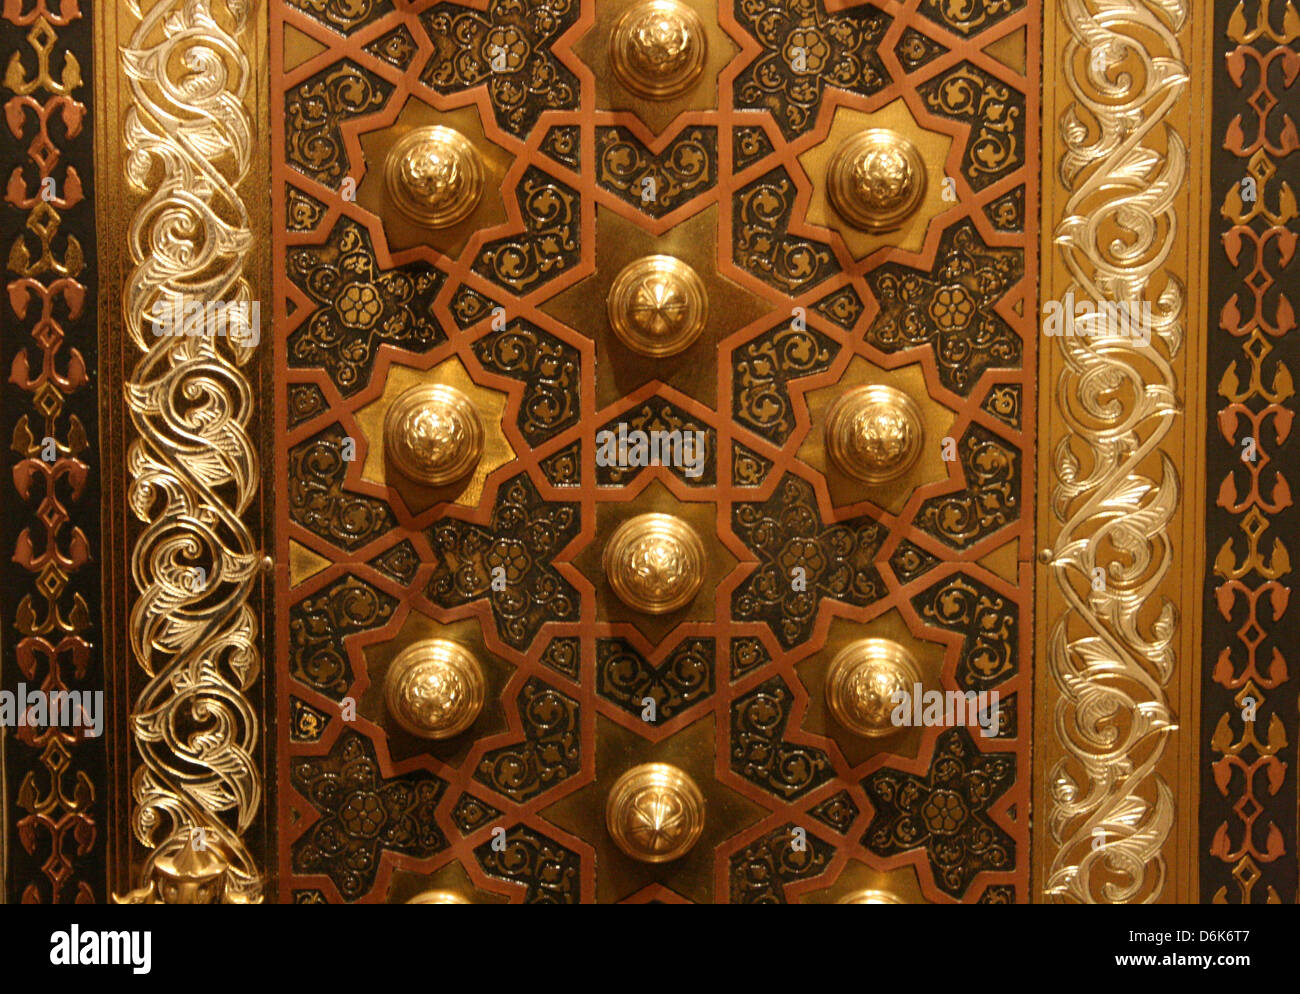 Maqueta de la antigua puerta de bronce Orientales en el Museo de Historia de la ciencia y la tecnología en el Islam en Estambul, Turquía Foto de stock